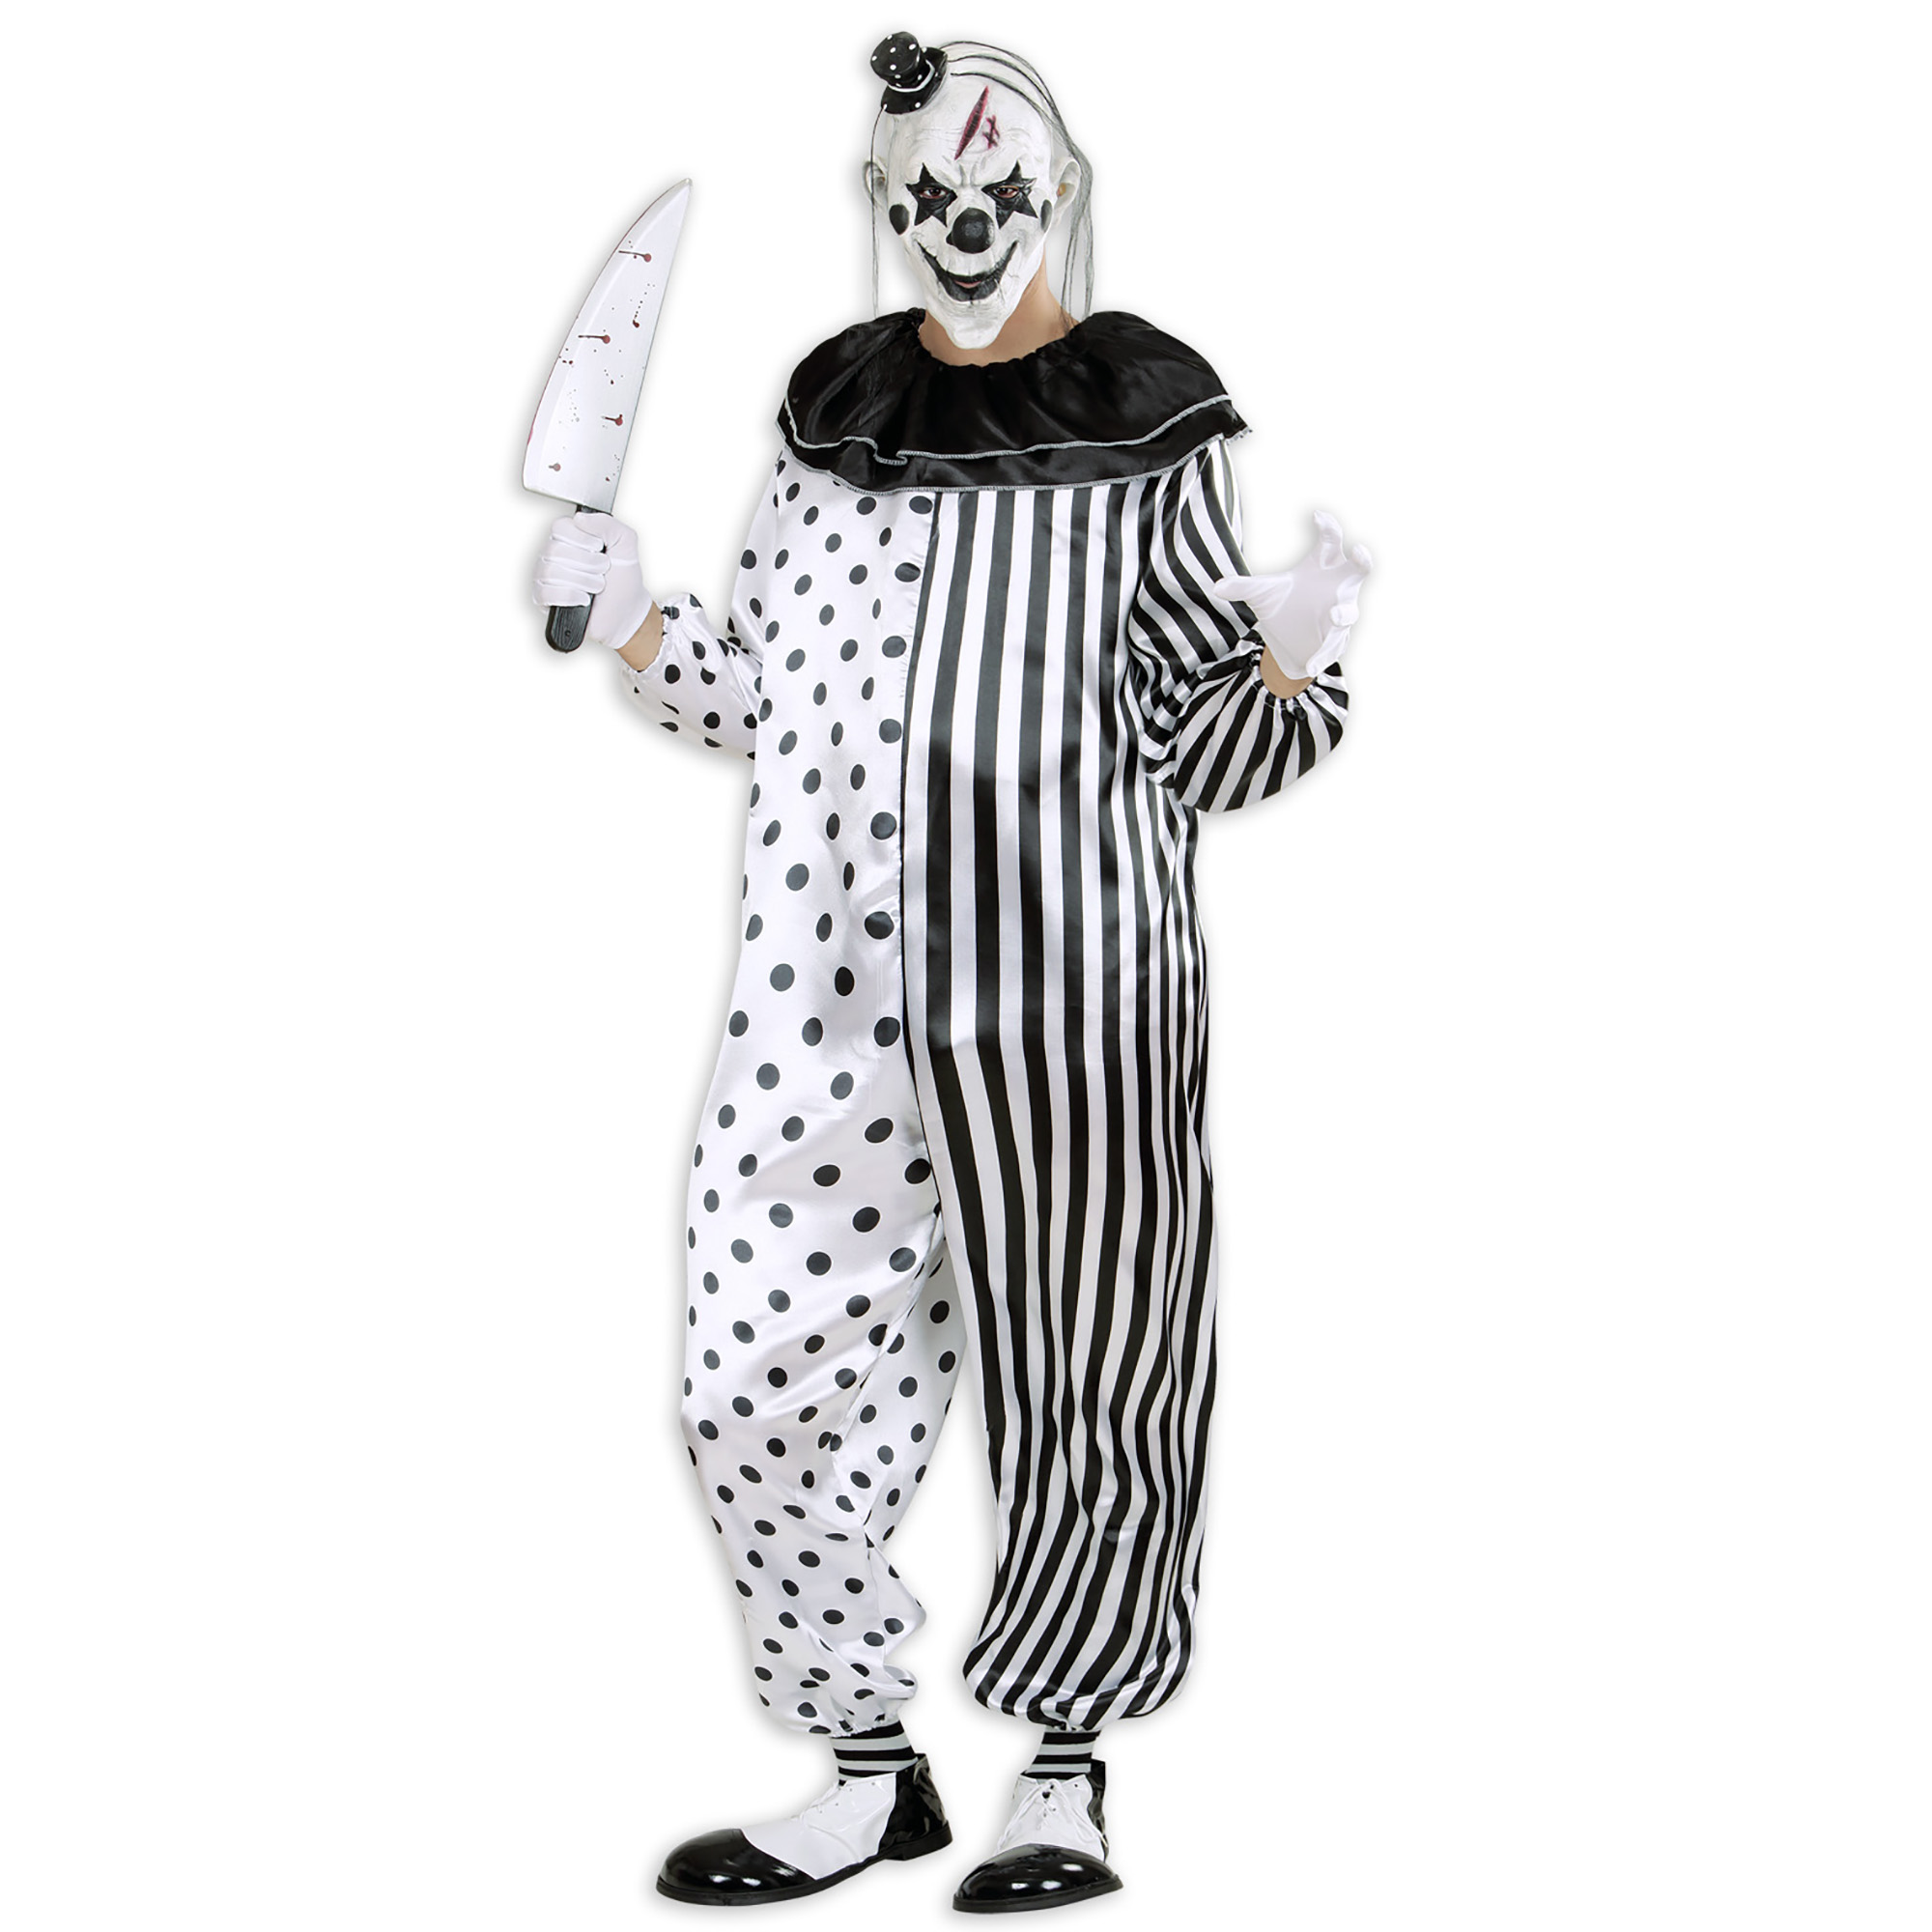 Killer Pierrot Killerclown Pantomime Clown Halloween Kostüm Overall